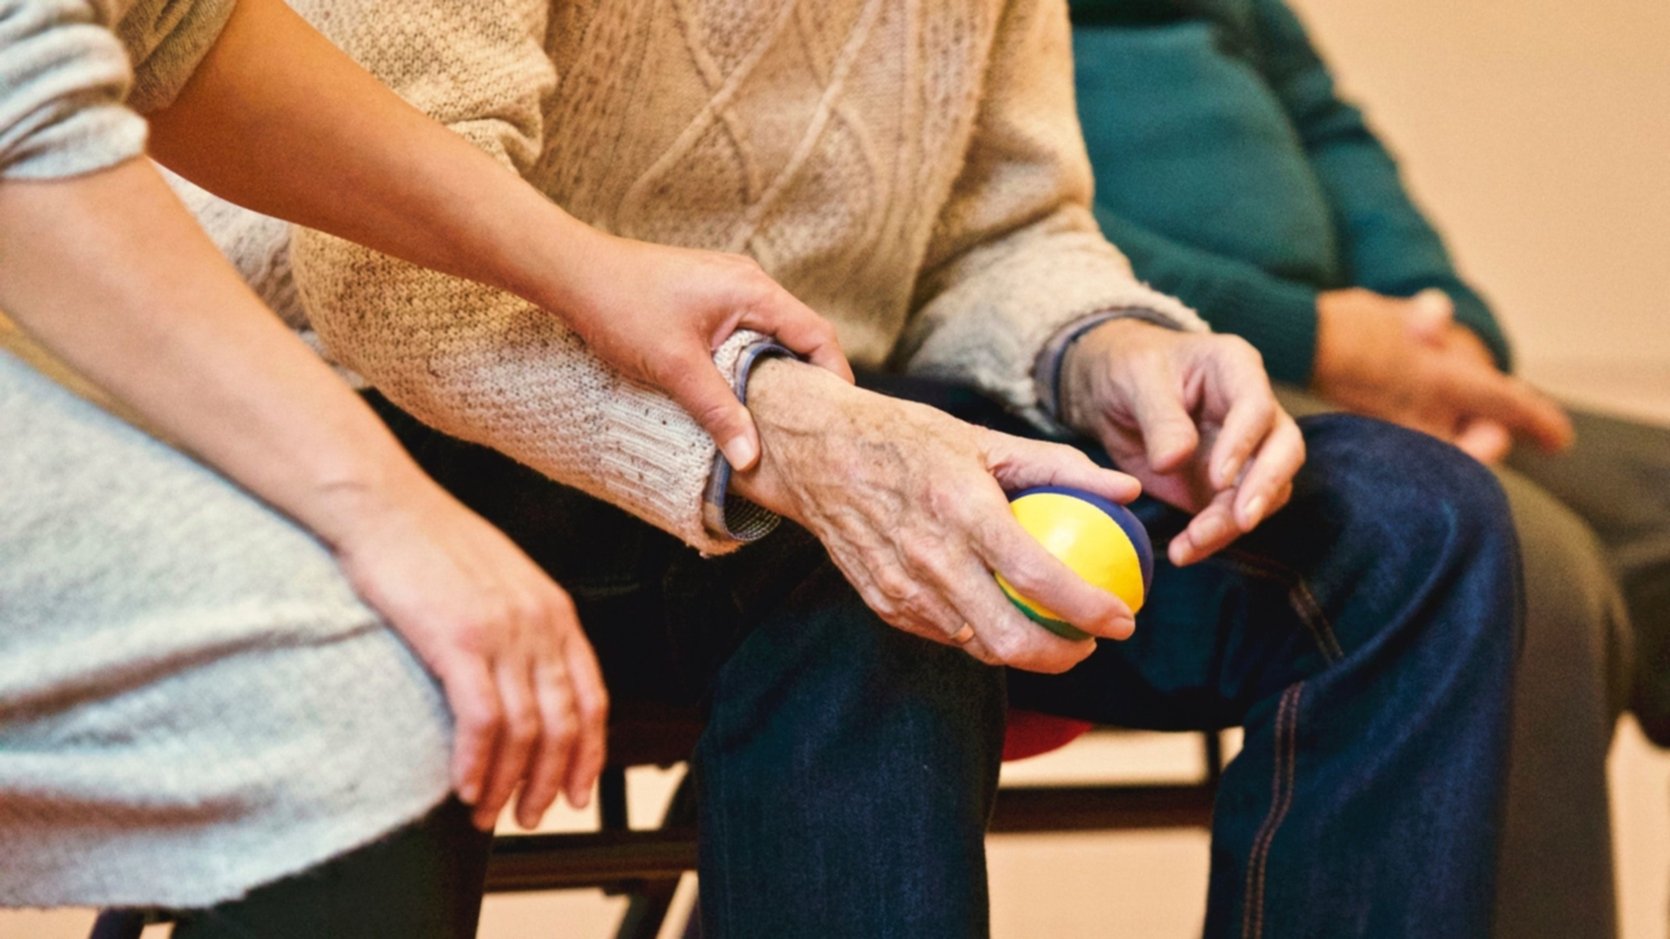 GGZ nieuws: Kortdurende psychotherapie is effectief bij ouderen met PTSS